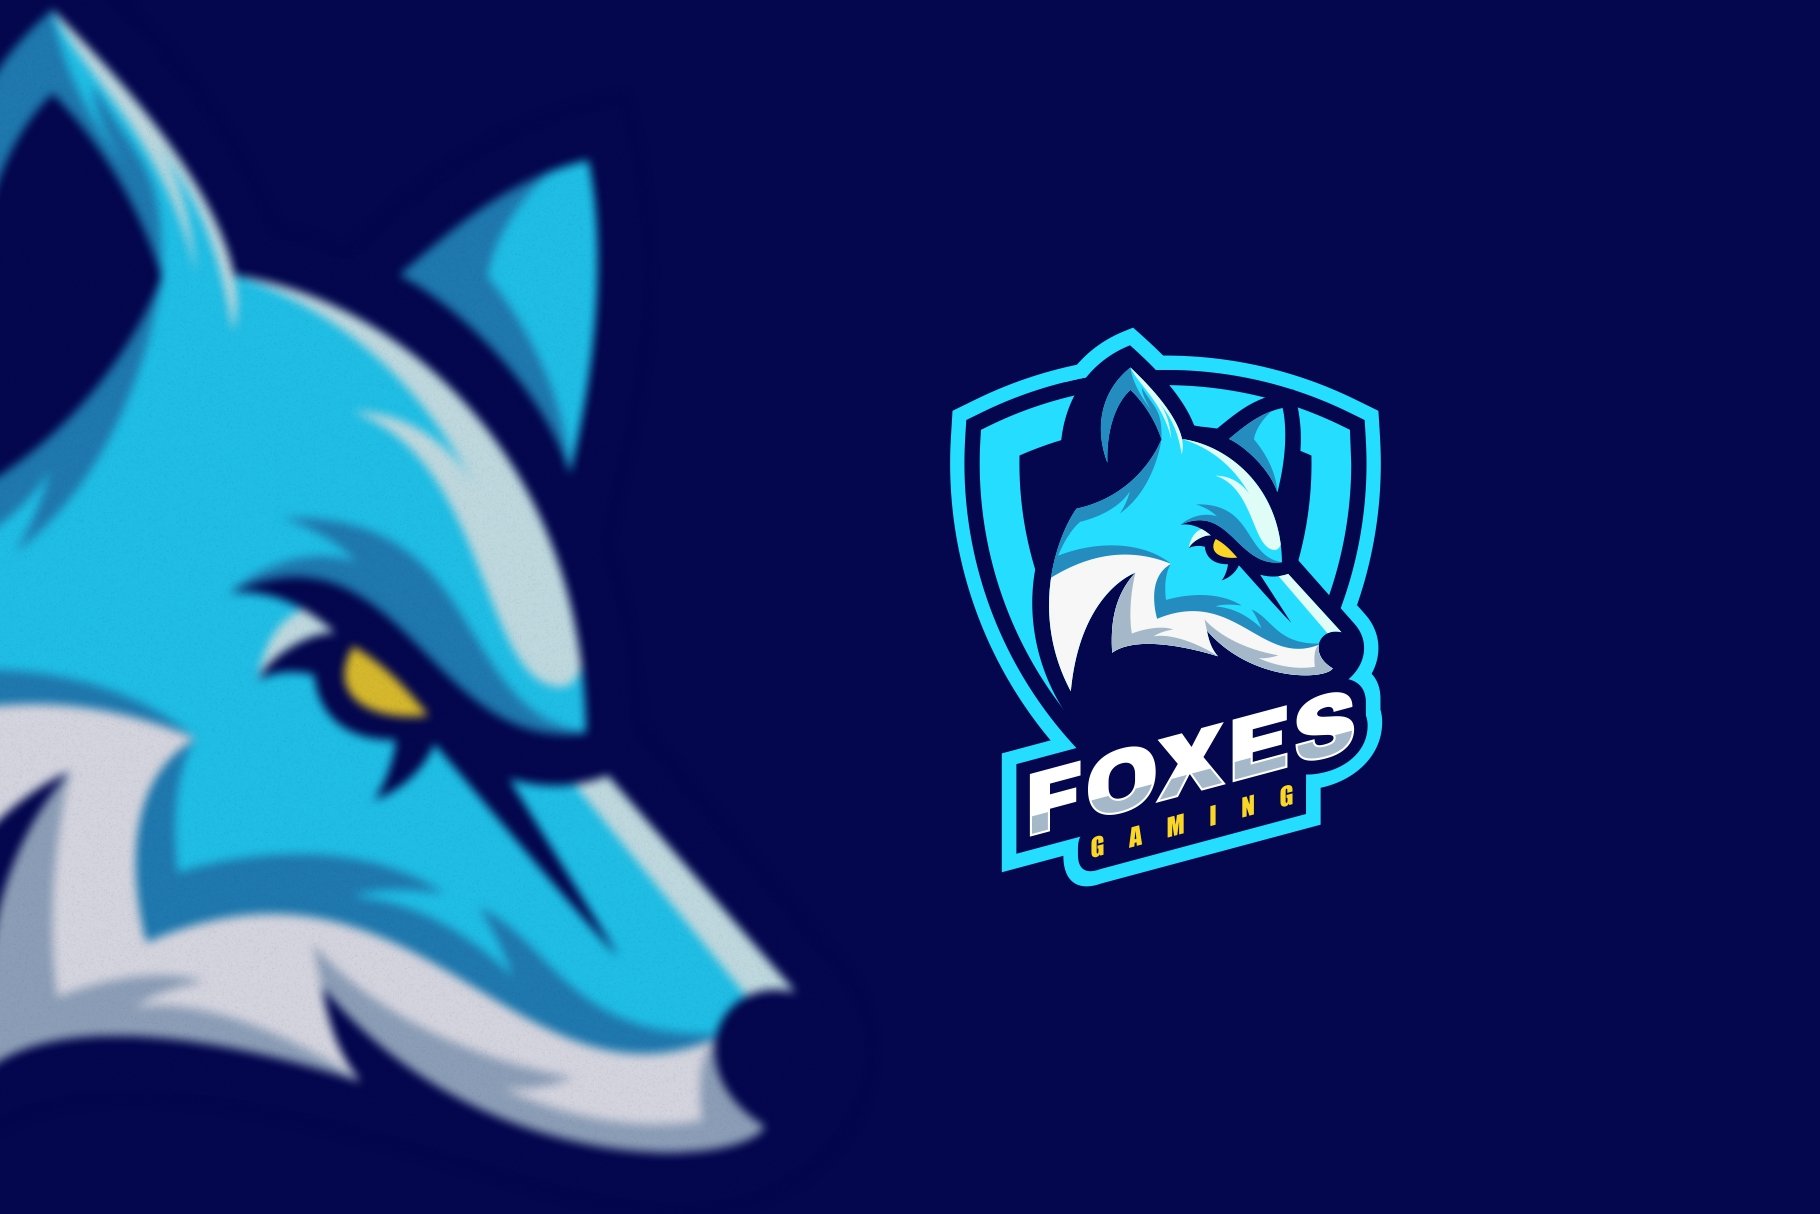 Fox Sport and E-Sport Logo cover image.